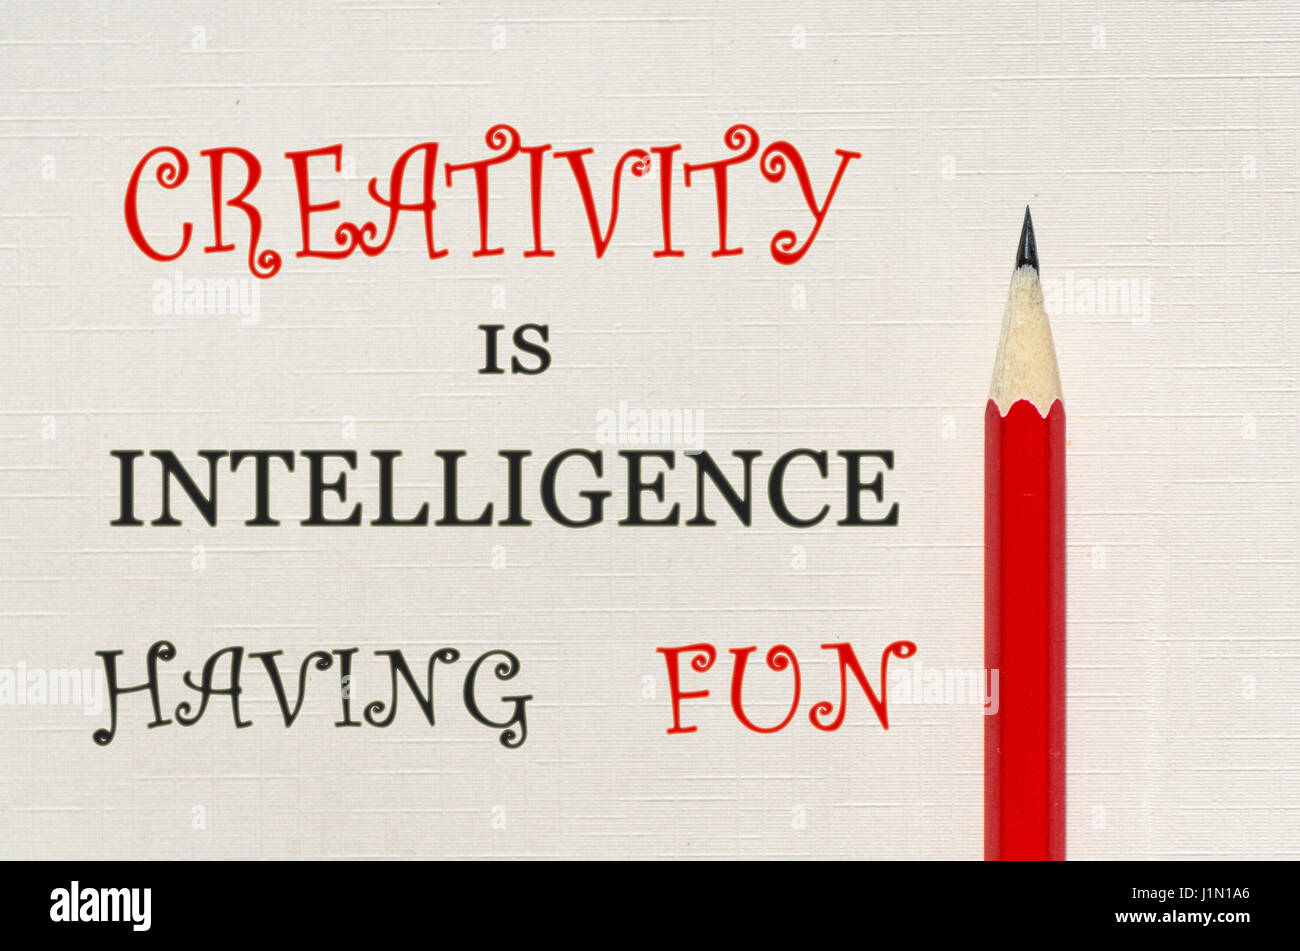 Citation inspirante de la créativité est l'intelligence s'amusant Banque D'Images